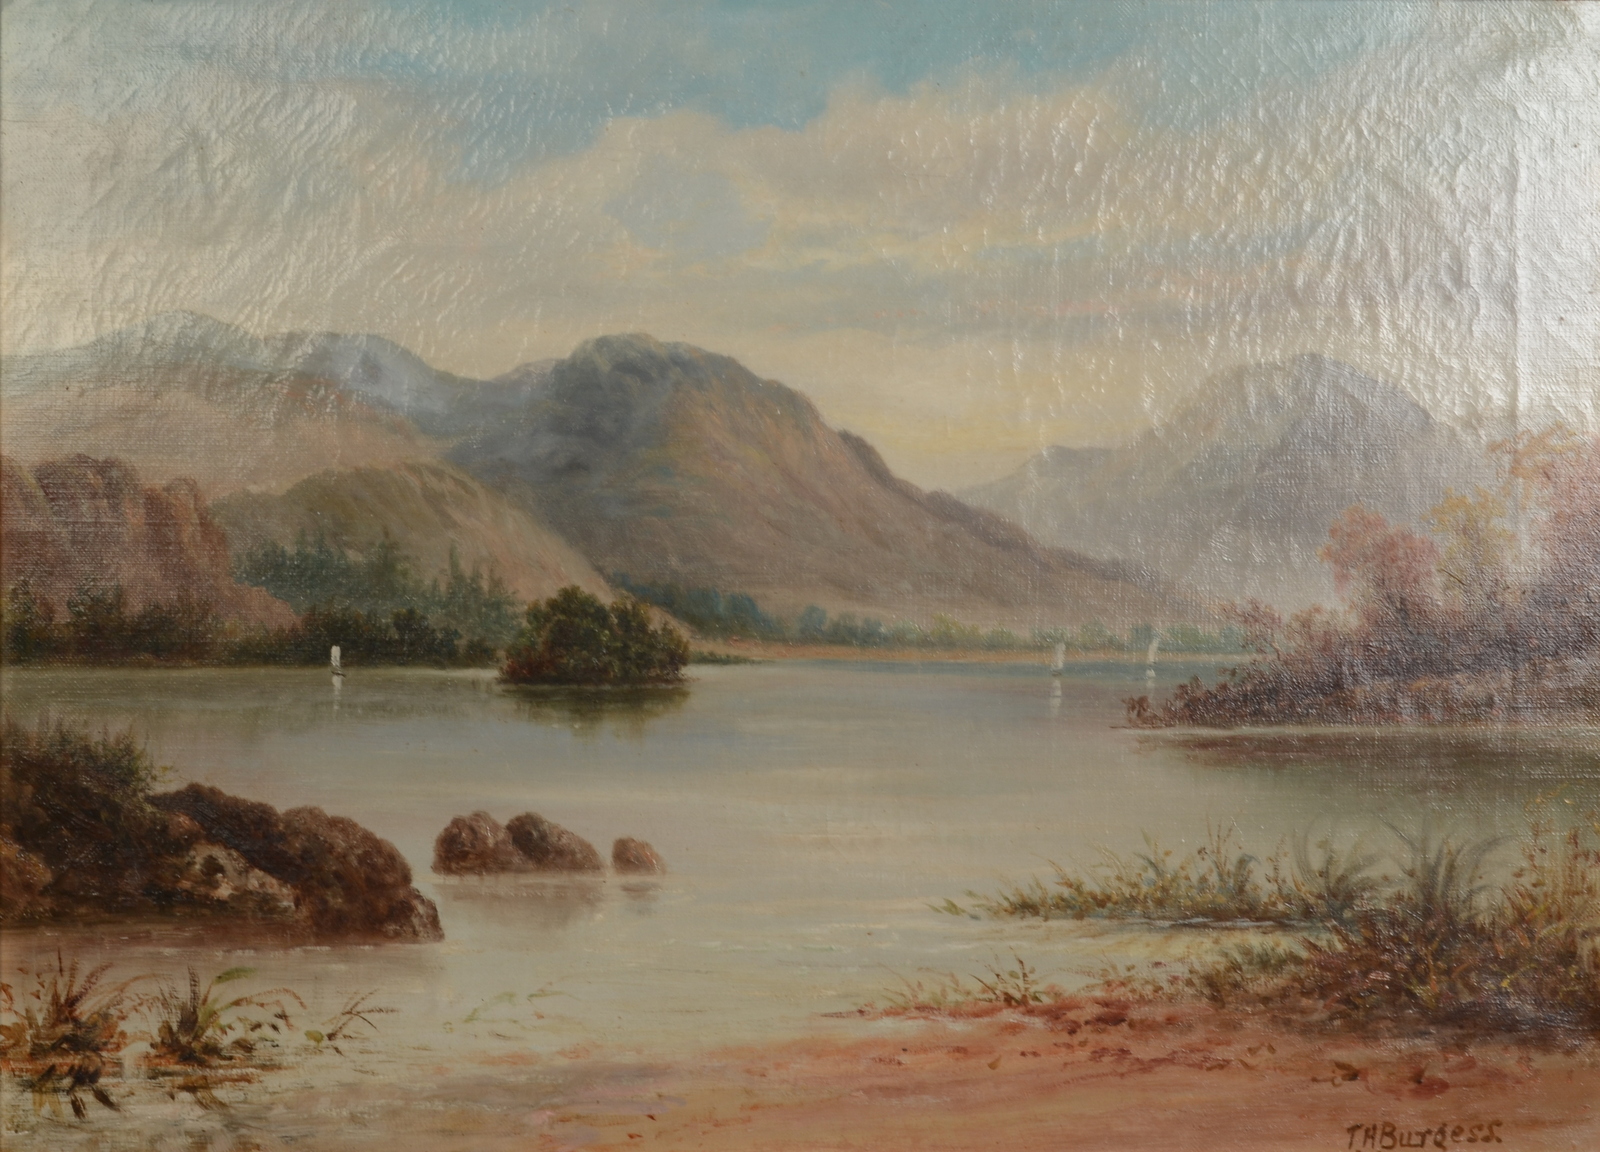 T H BURGESS A Lakeland Landscape Oil on canvas Signed 39 x 55 cm